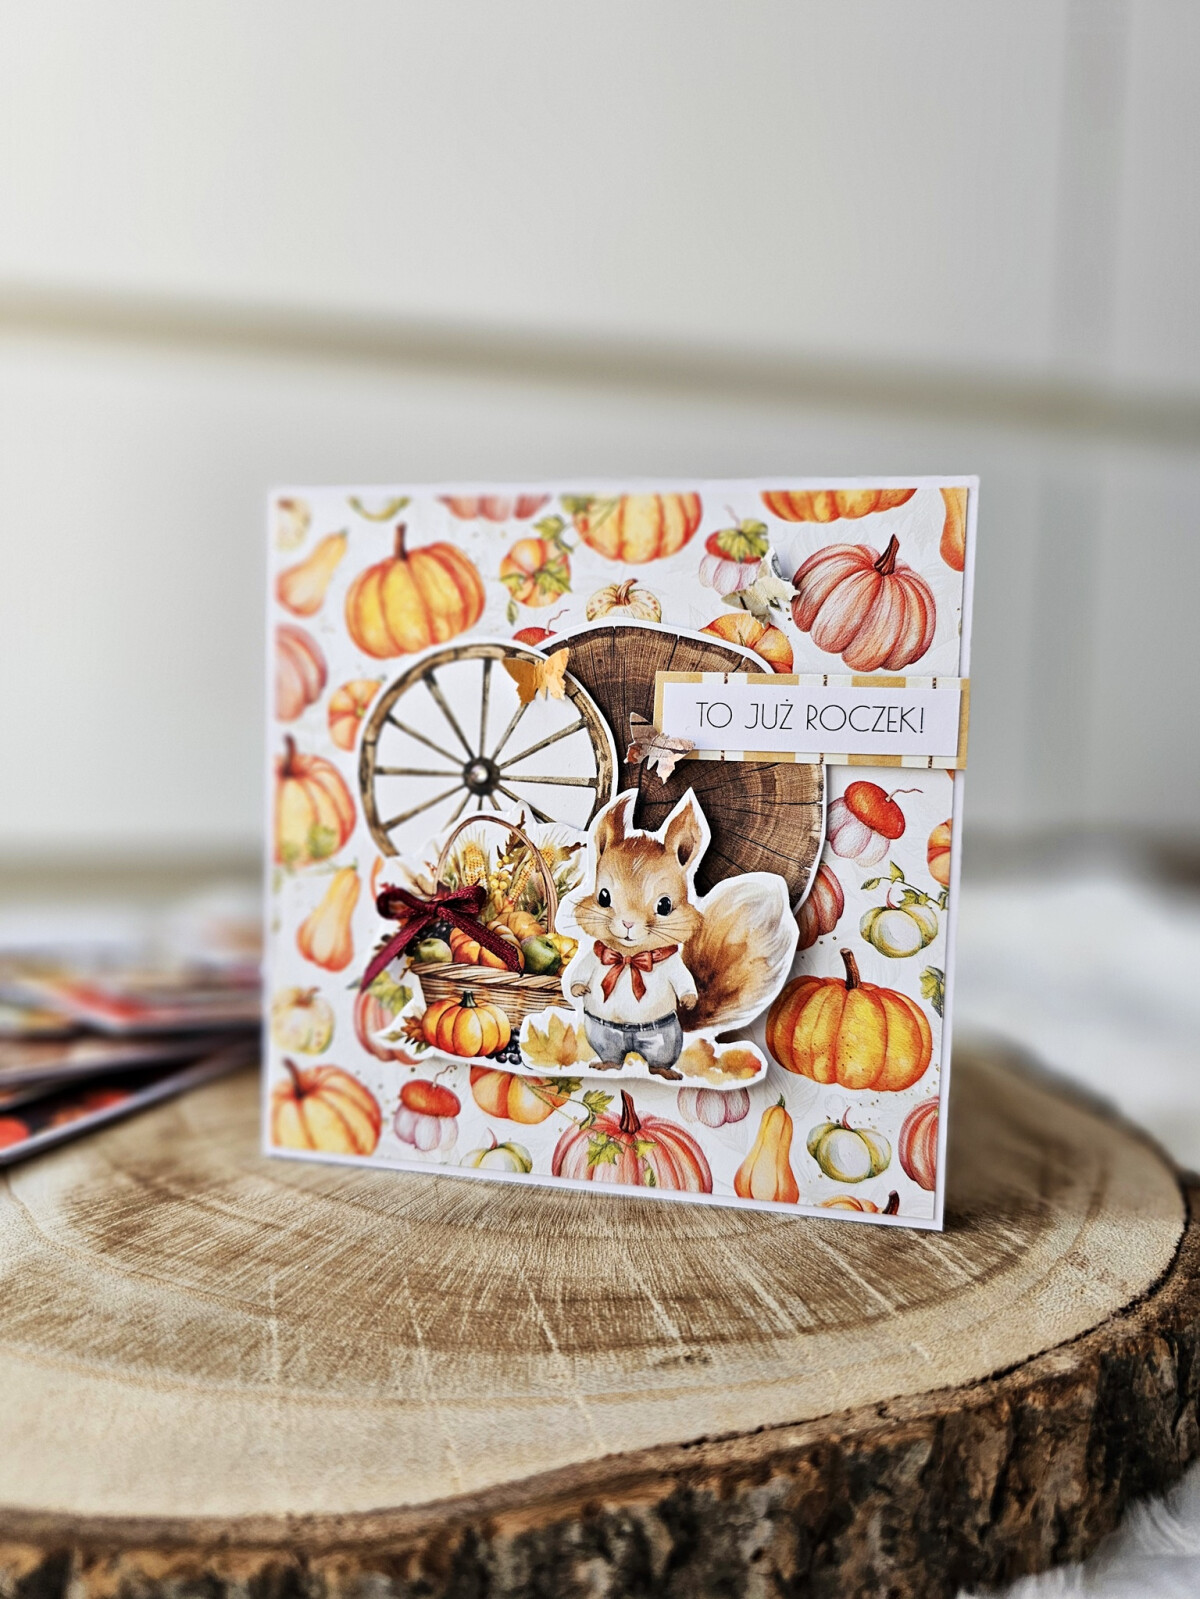 Kartka urodzinowa na roczek z wiewiórką jesienna